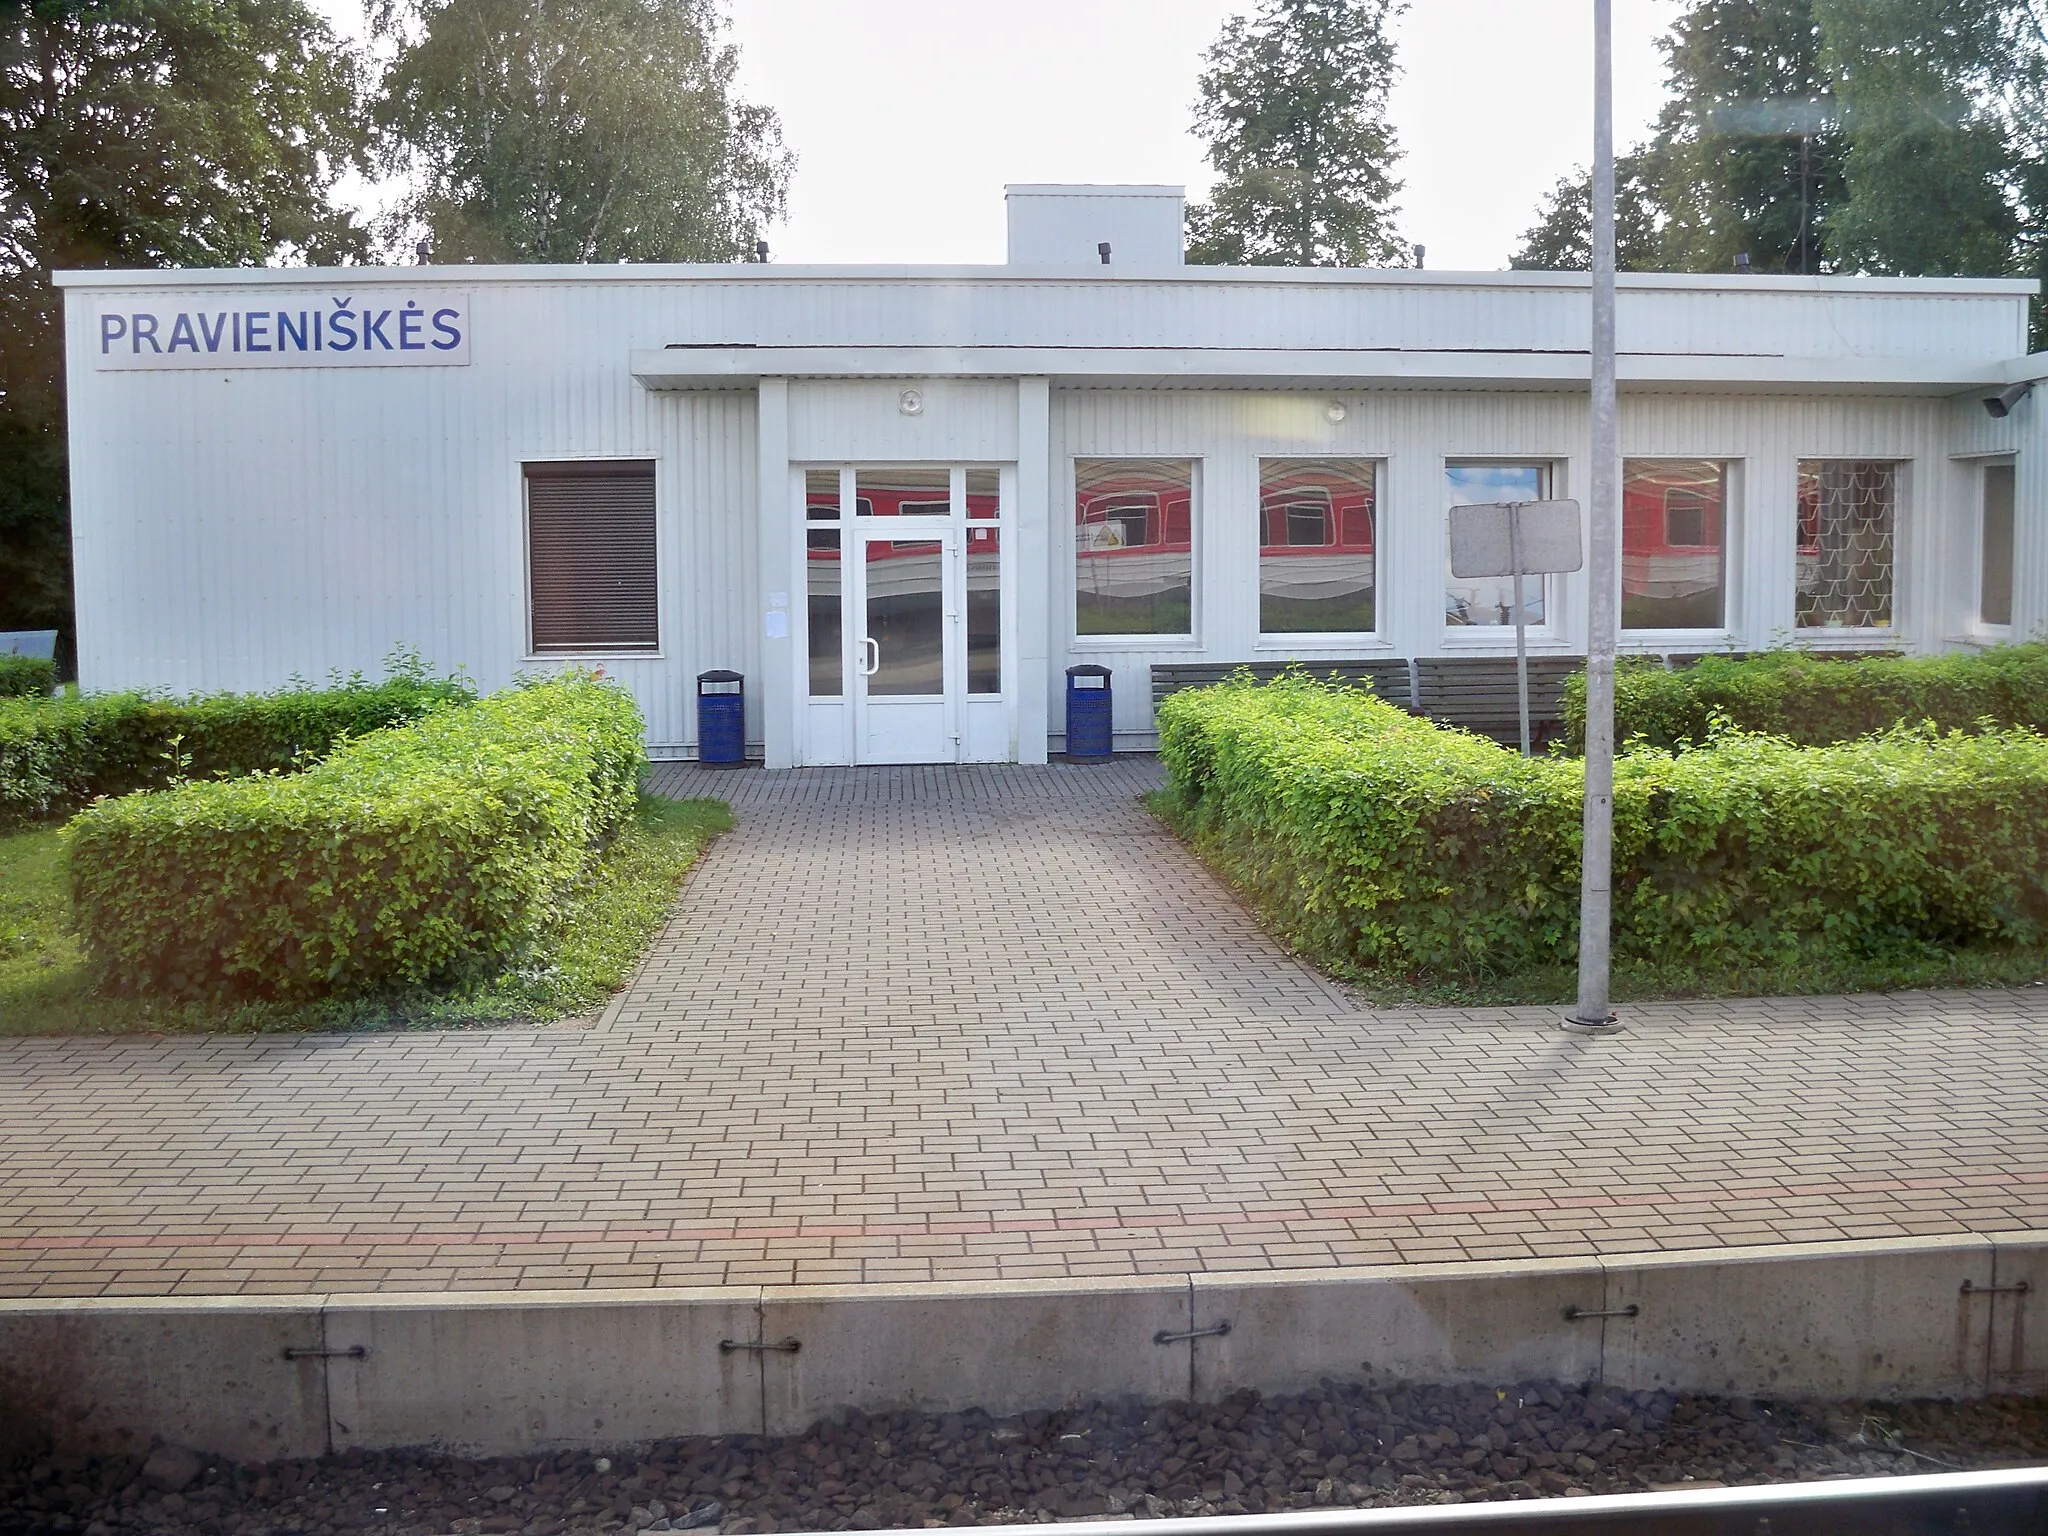 Photo showing: Pravieniškės train station.